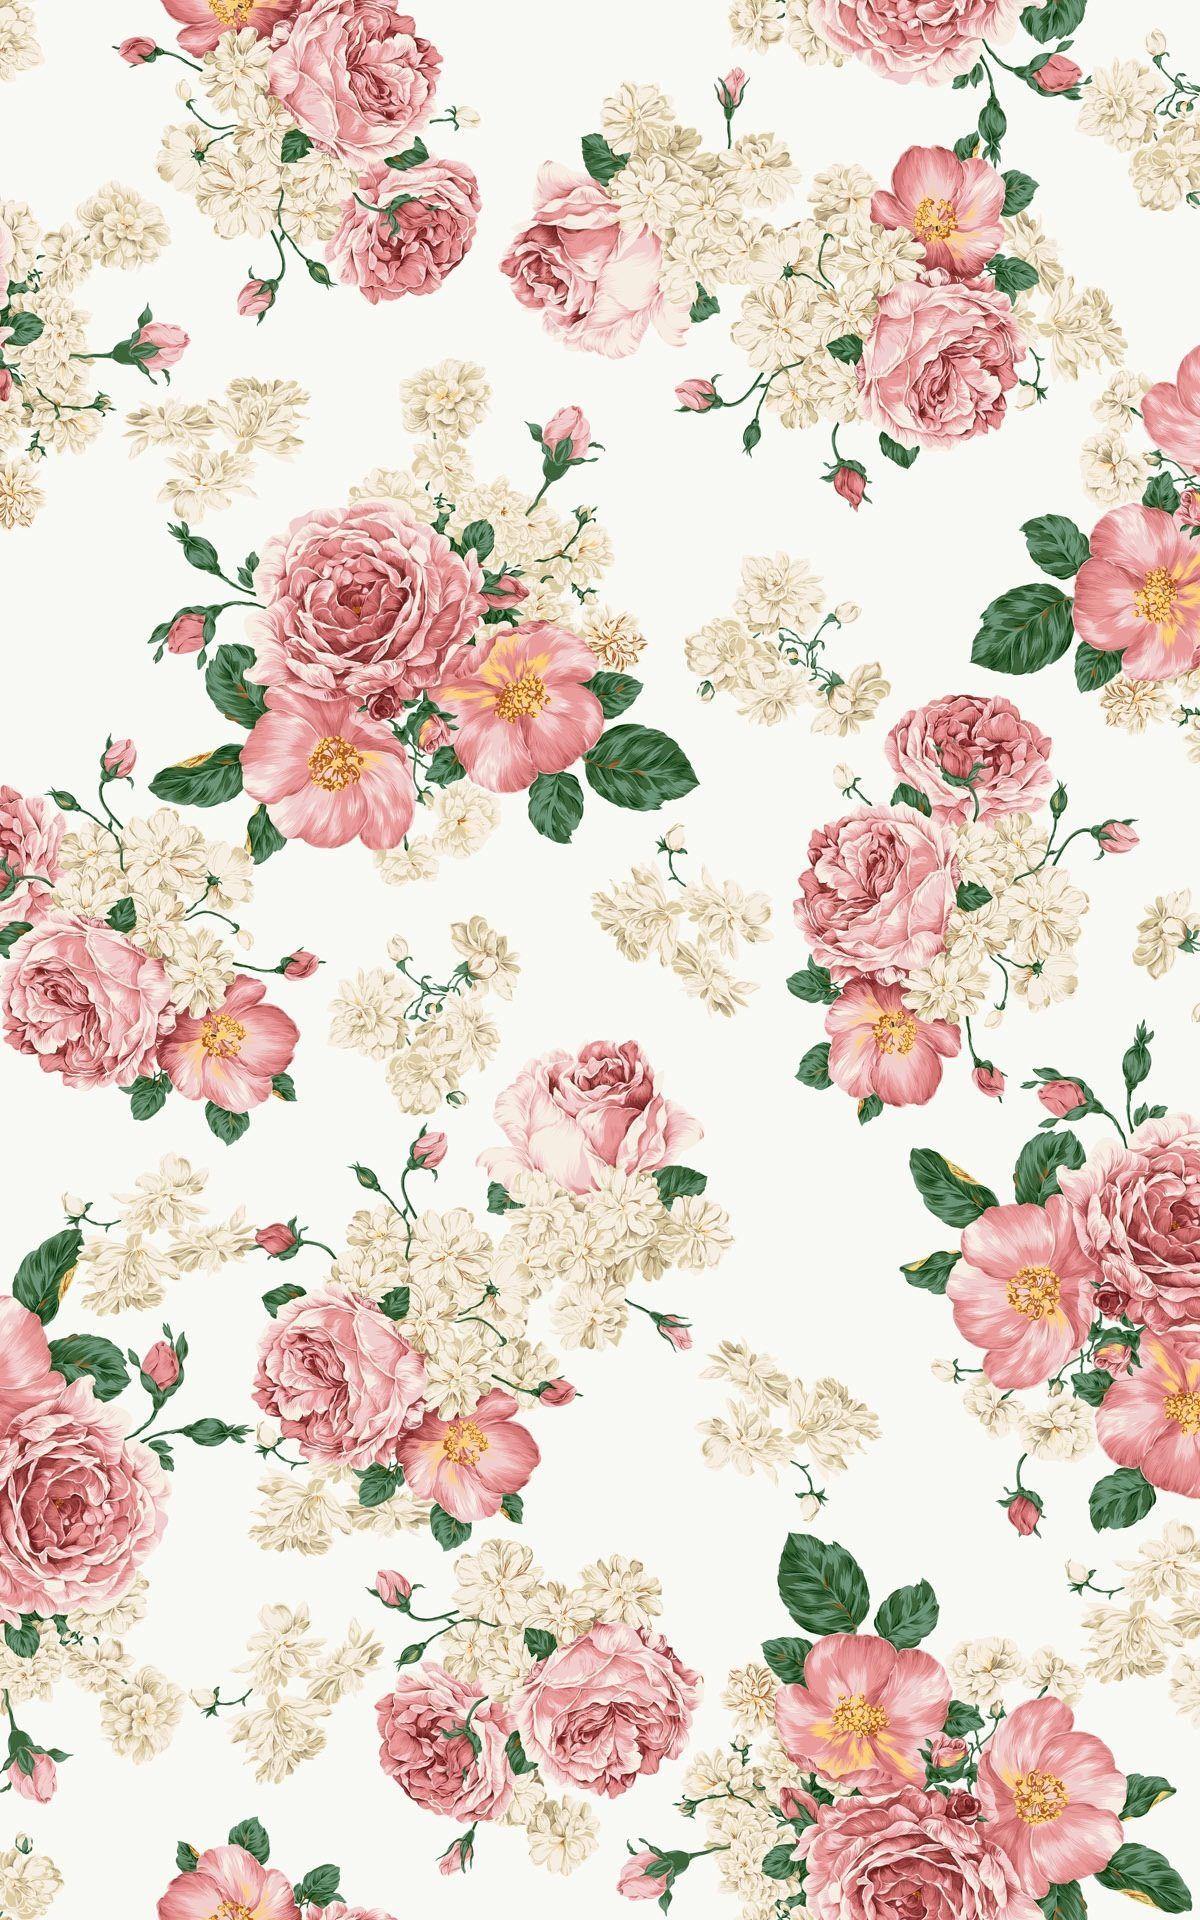 High Res Vintage Pink Flower Wallpaper. wallpaper